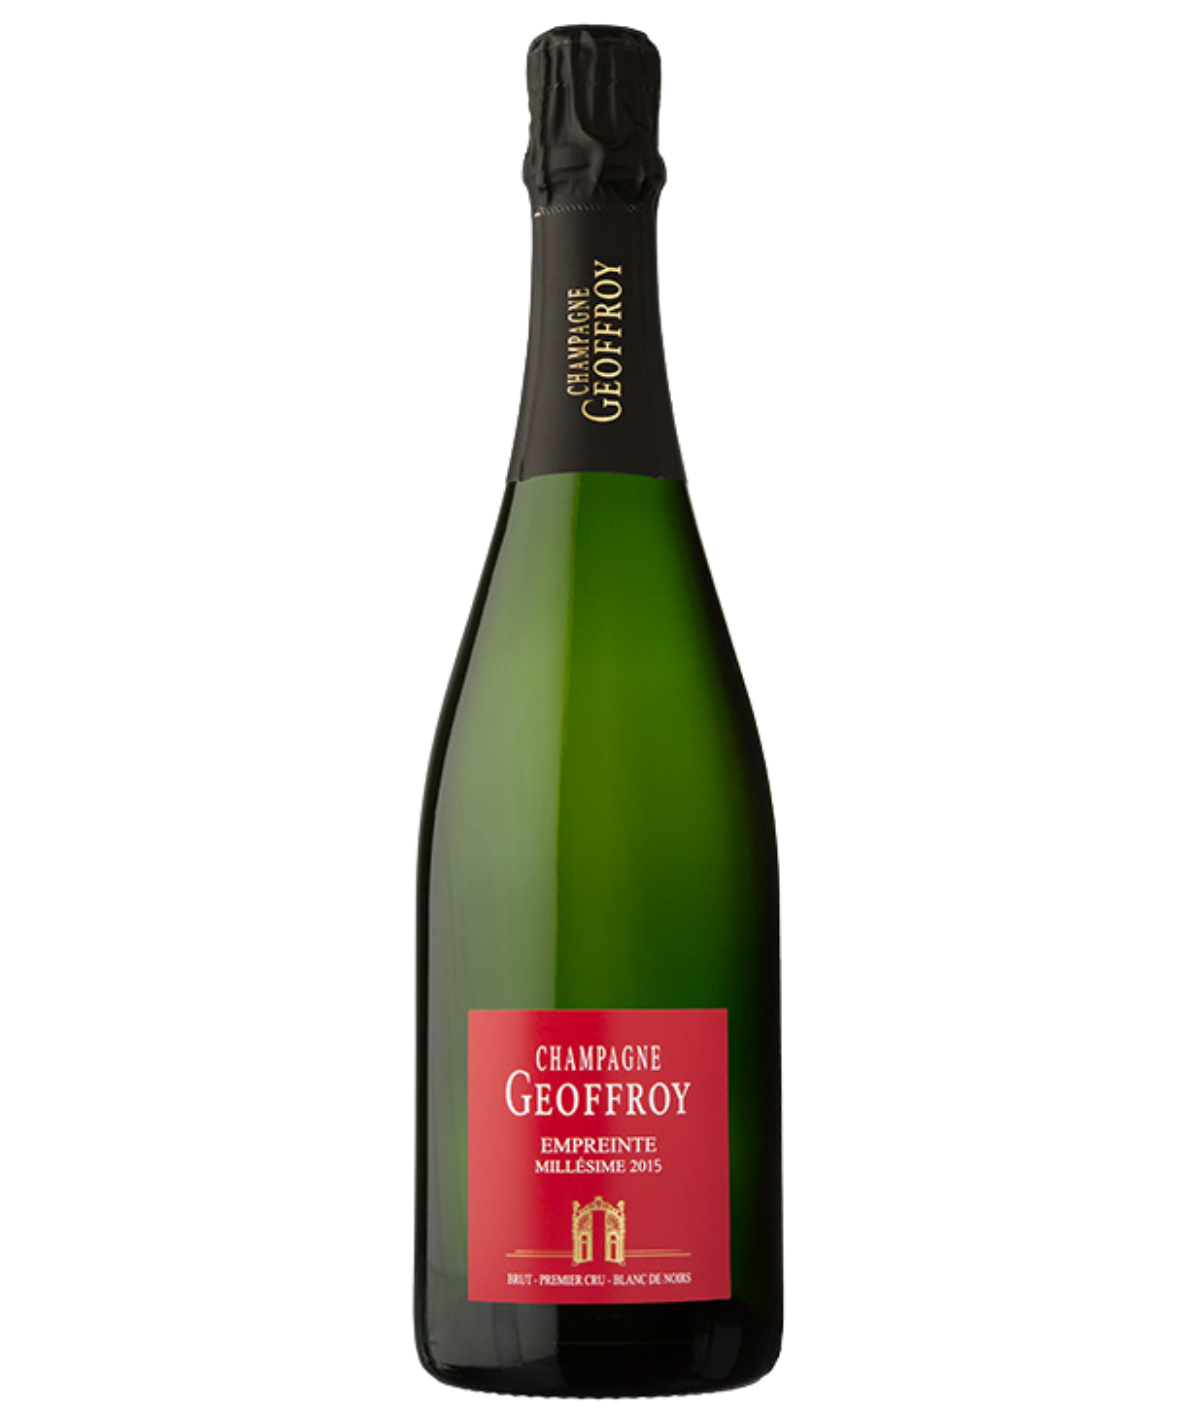 RENE GEOFFROY champagne Premier Cru Empreinte Brut 2015 vintage